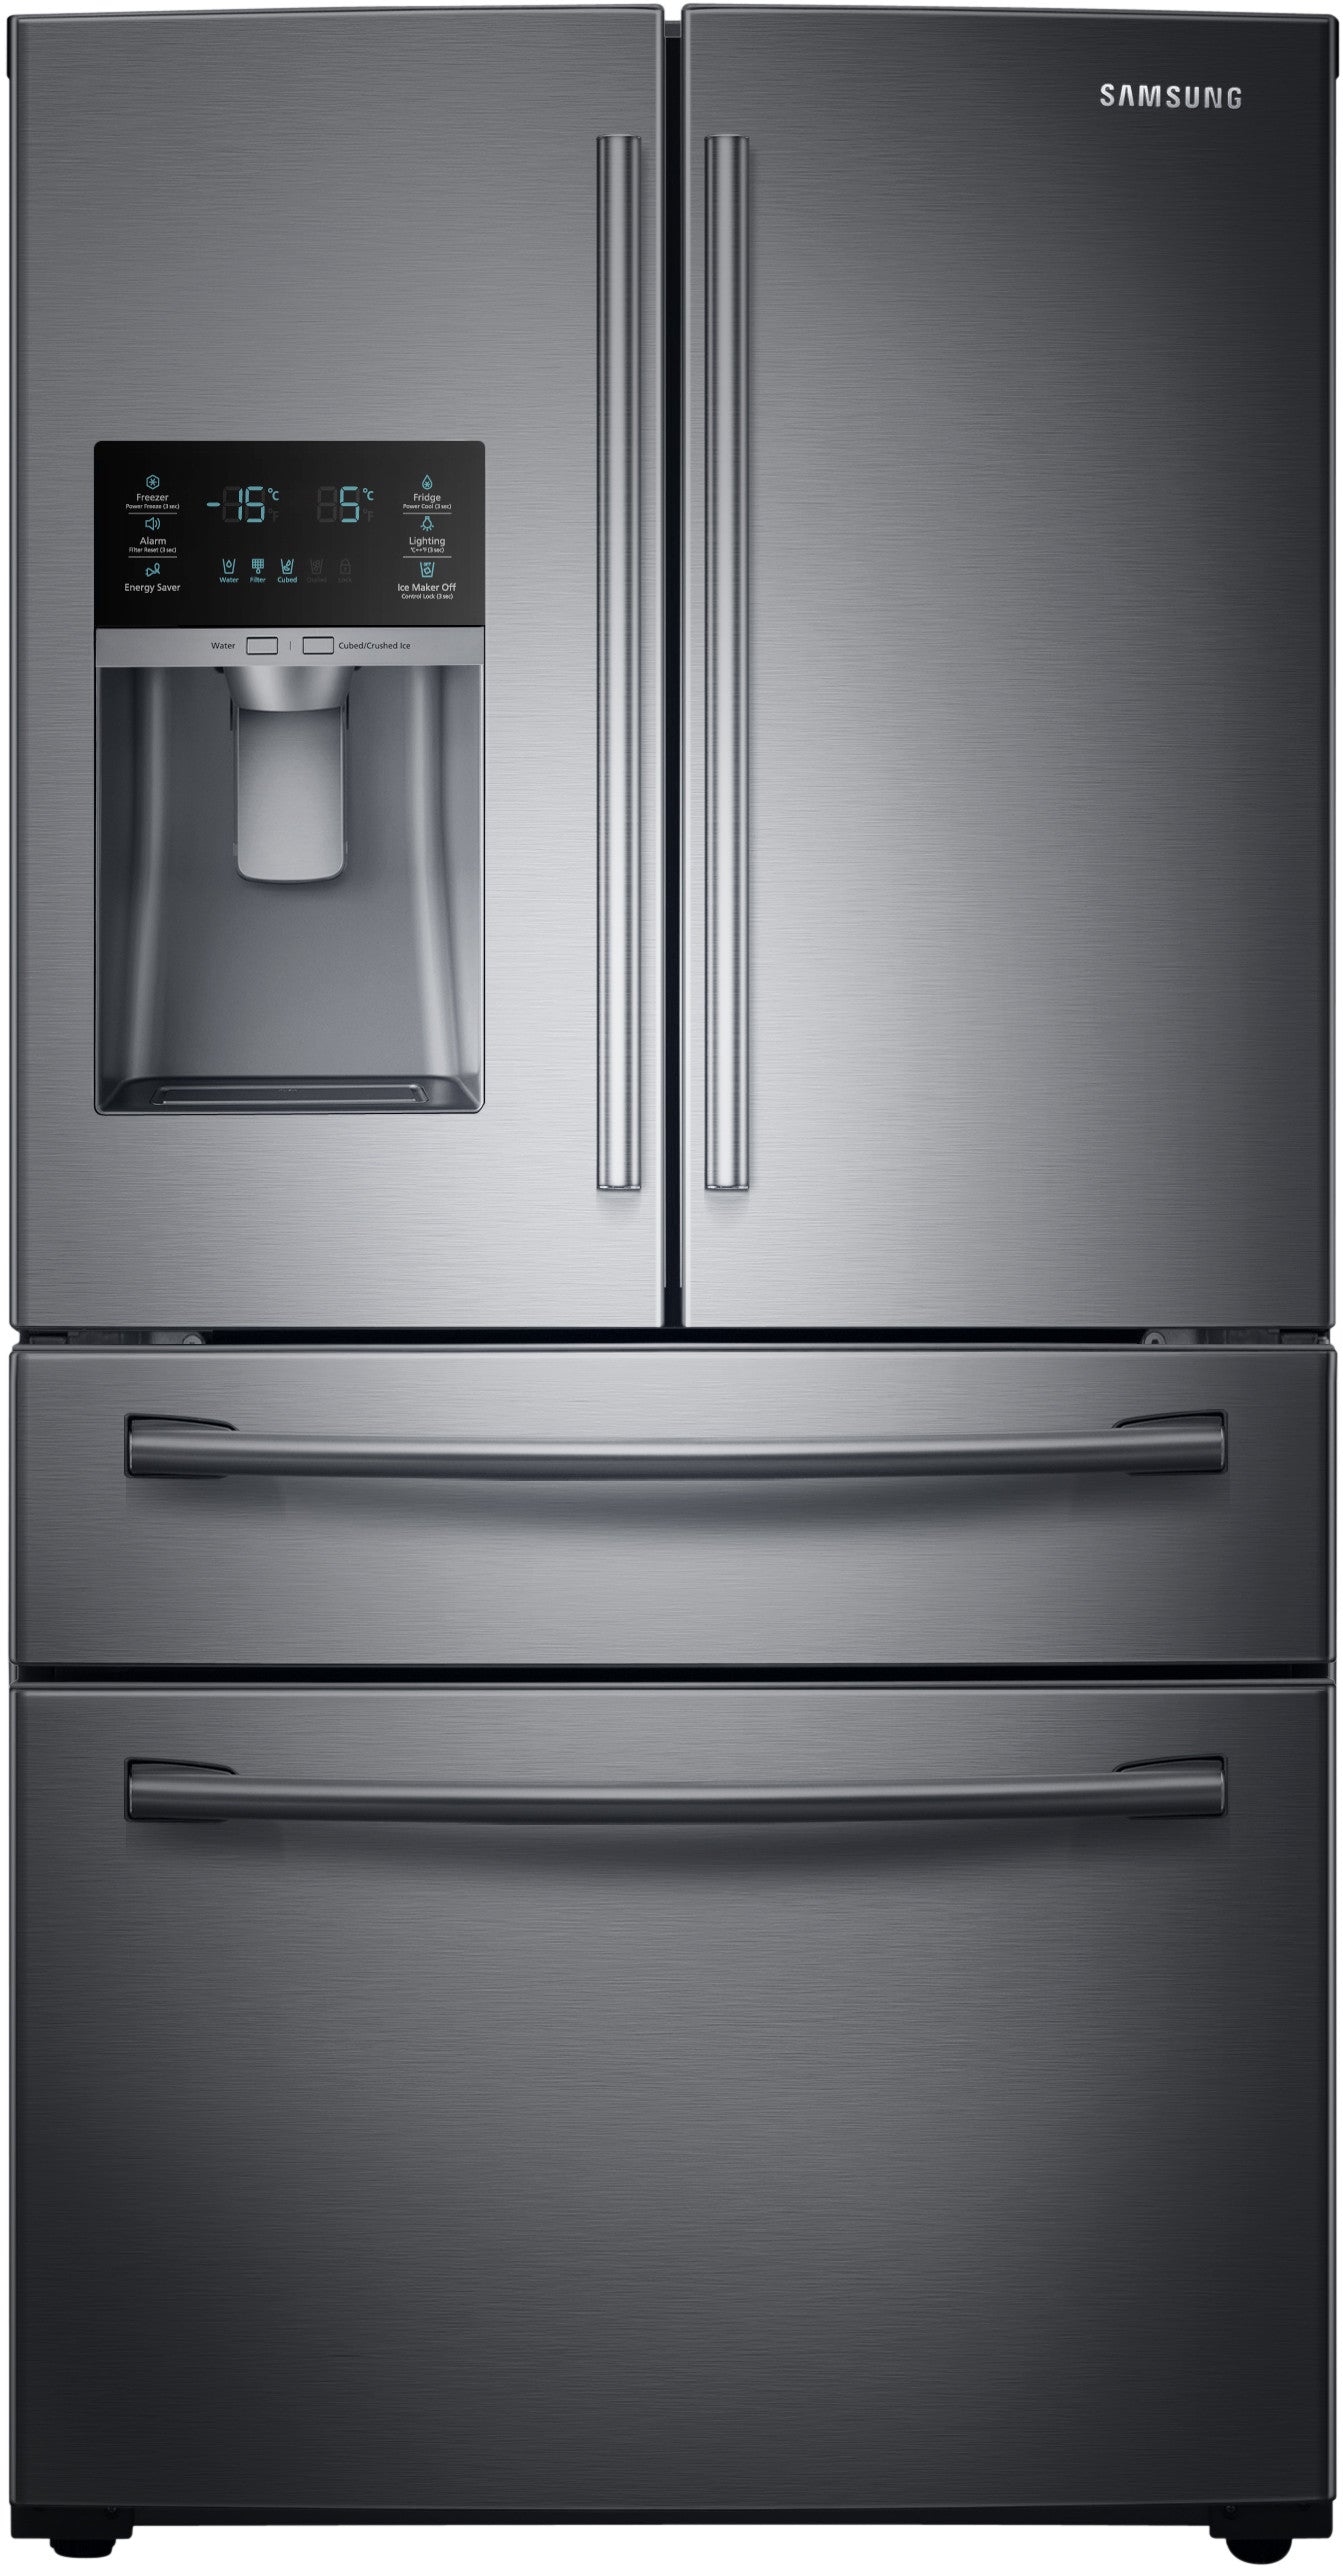 Samsung RF28HMEDBSG/AA 28 Cu. Ft. 4-Door French Door Refrigerator